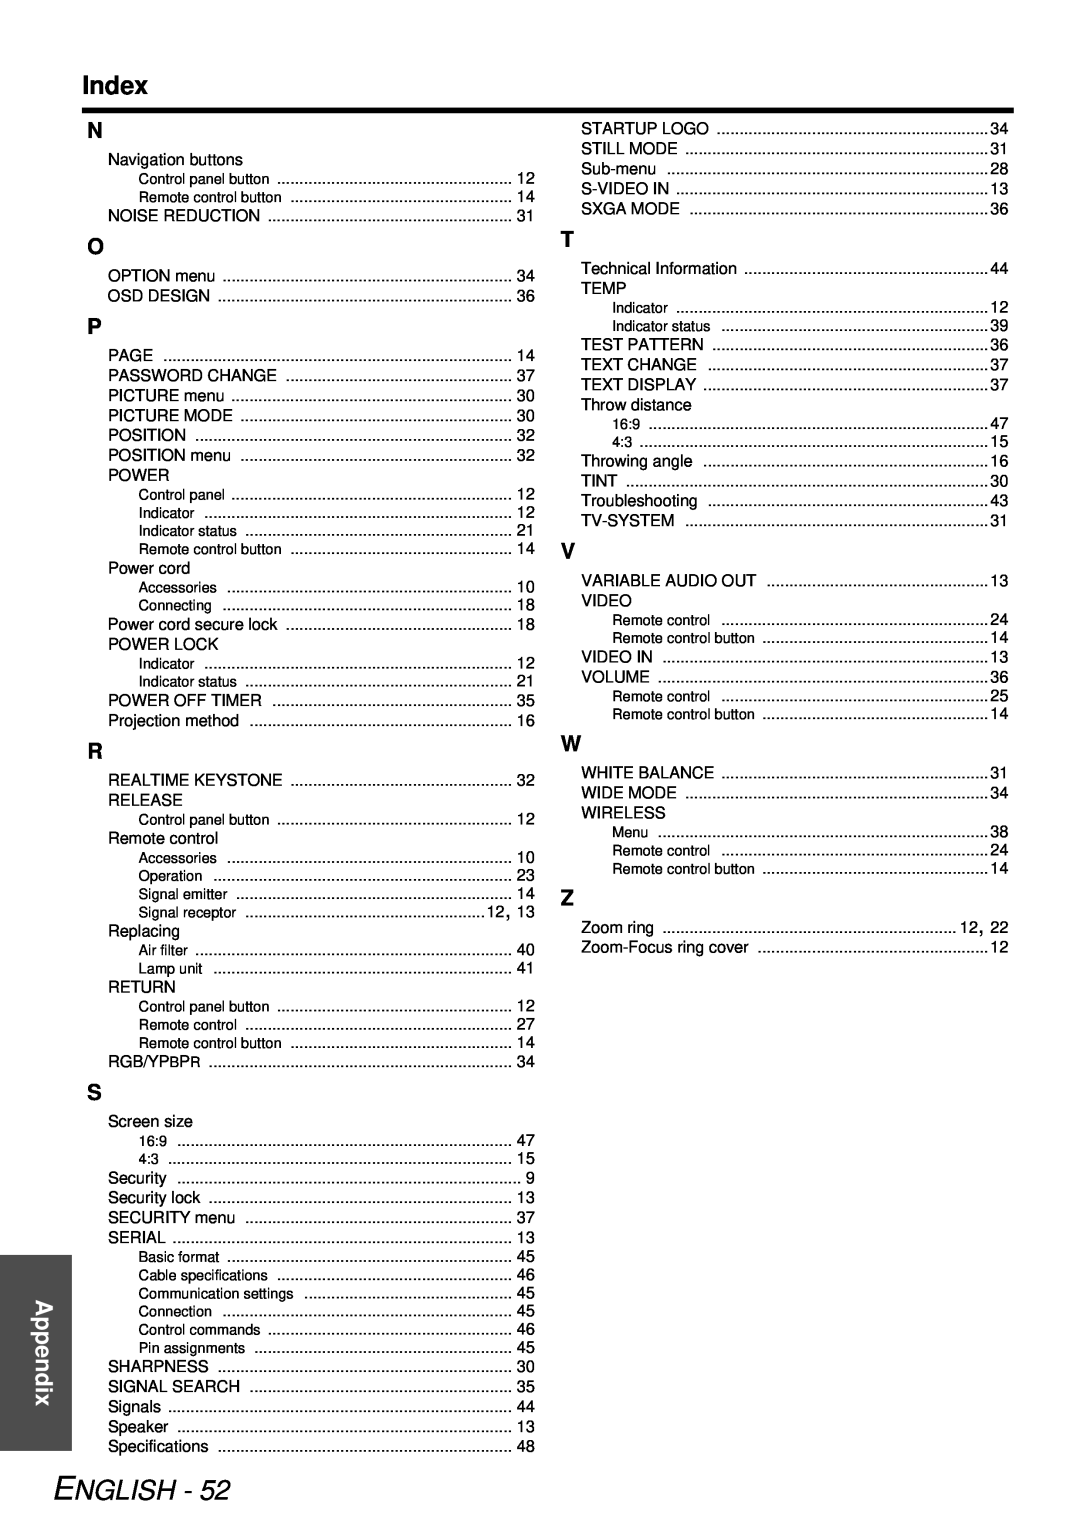 Panasonic PT-LB78U manual Index, English, Appendix 